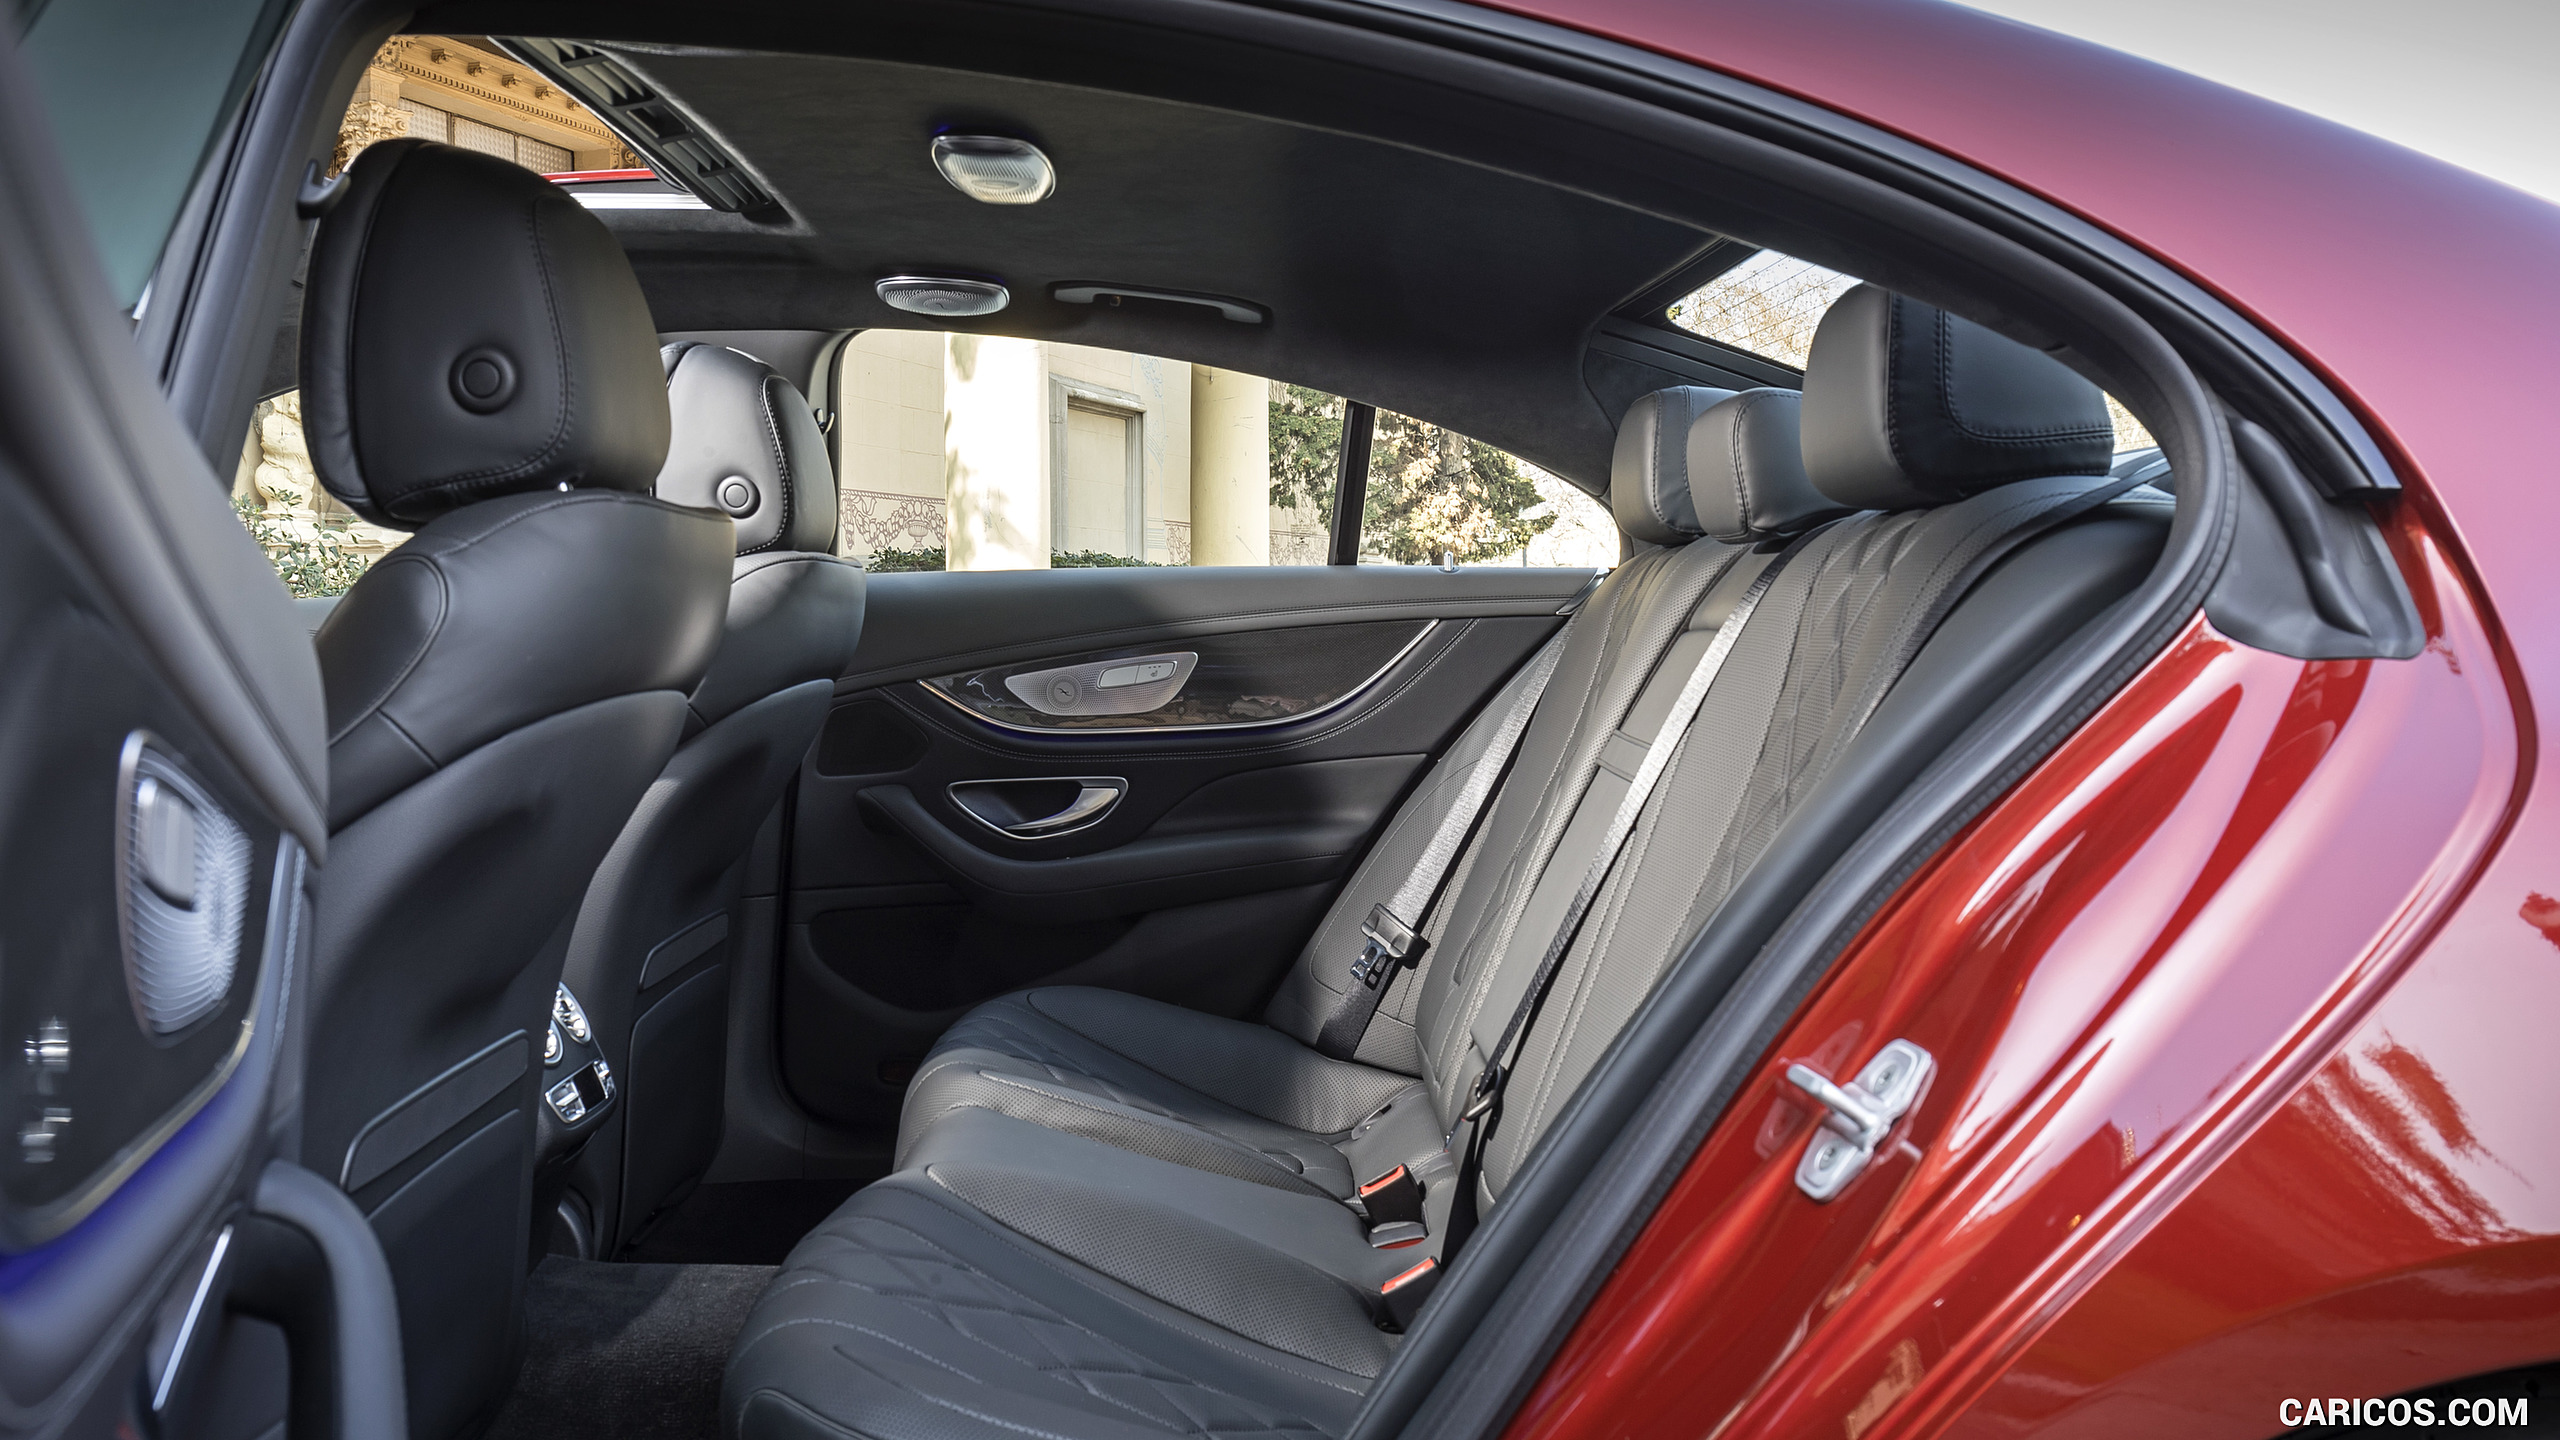 2019 Mercedes-Benz CLS 450 4MATIC - Interior, Rear Seats, #94 of 231